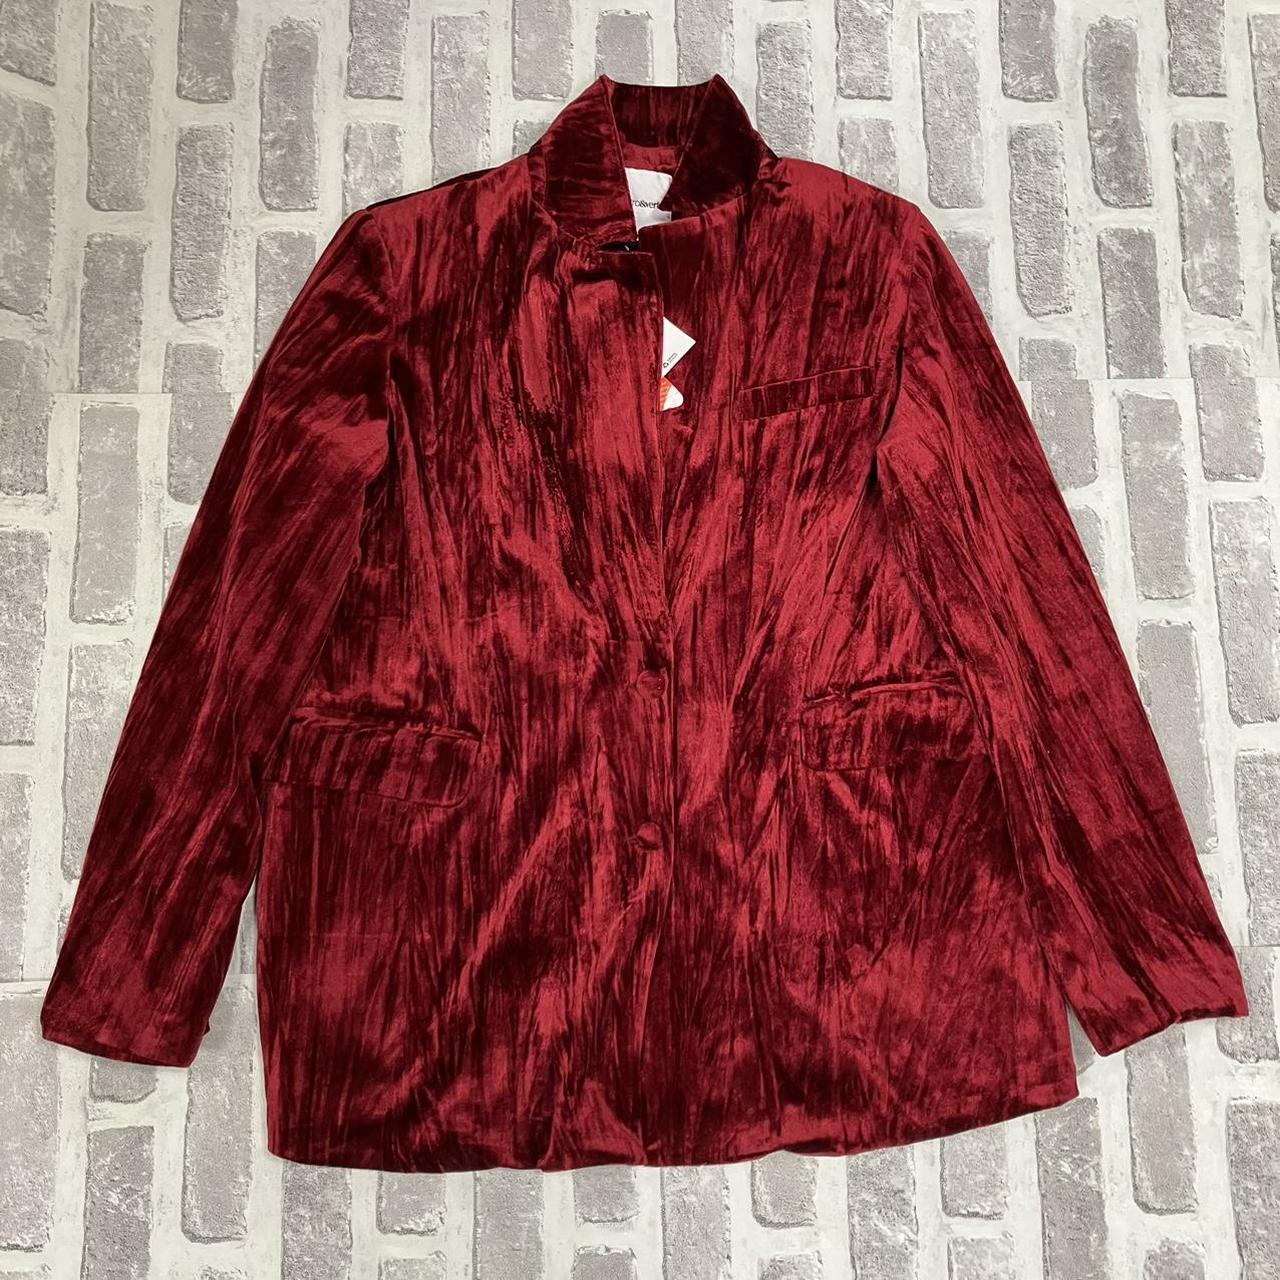 Extro&Vert funky burgundy red velvet blazer jacket... - Depop